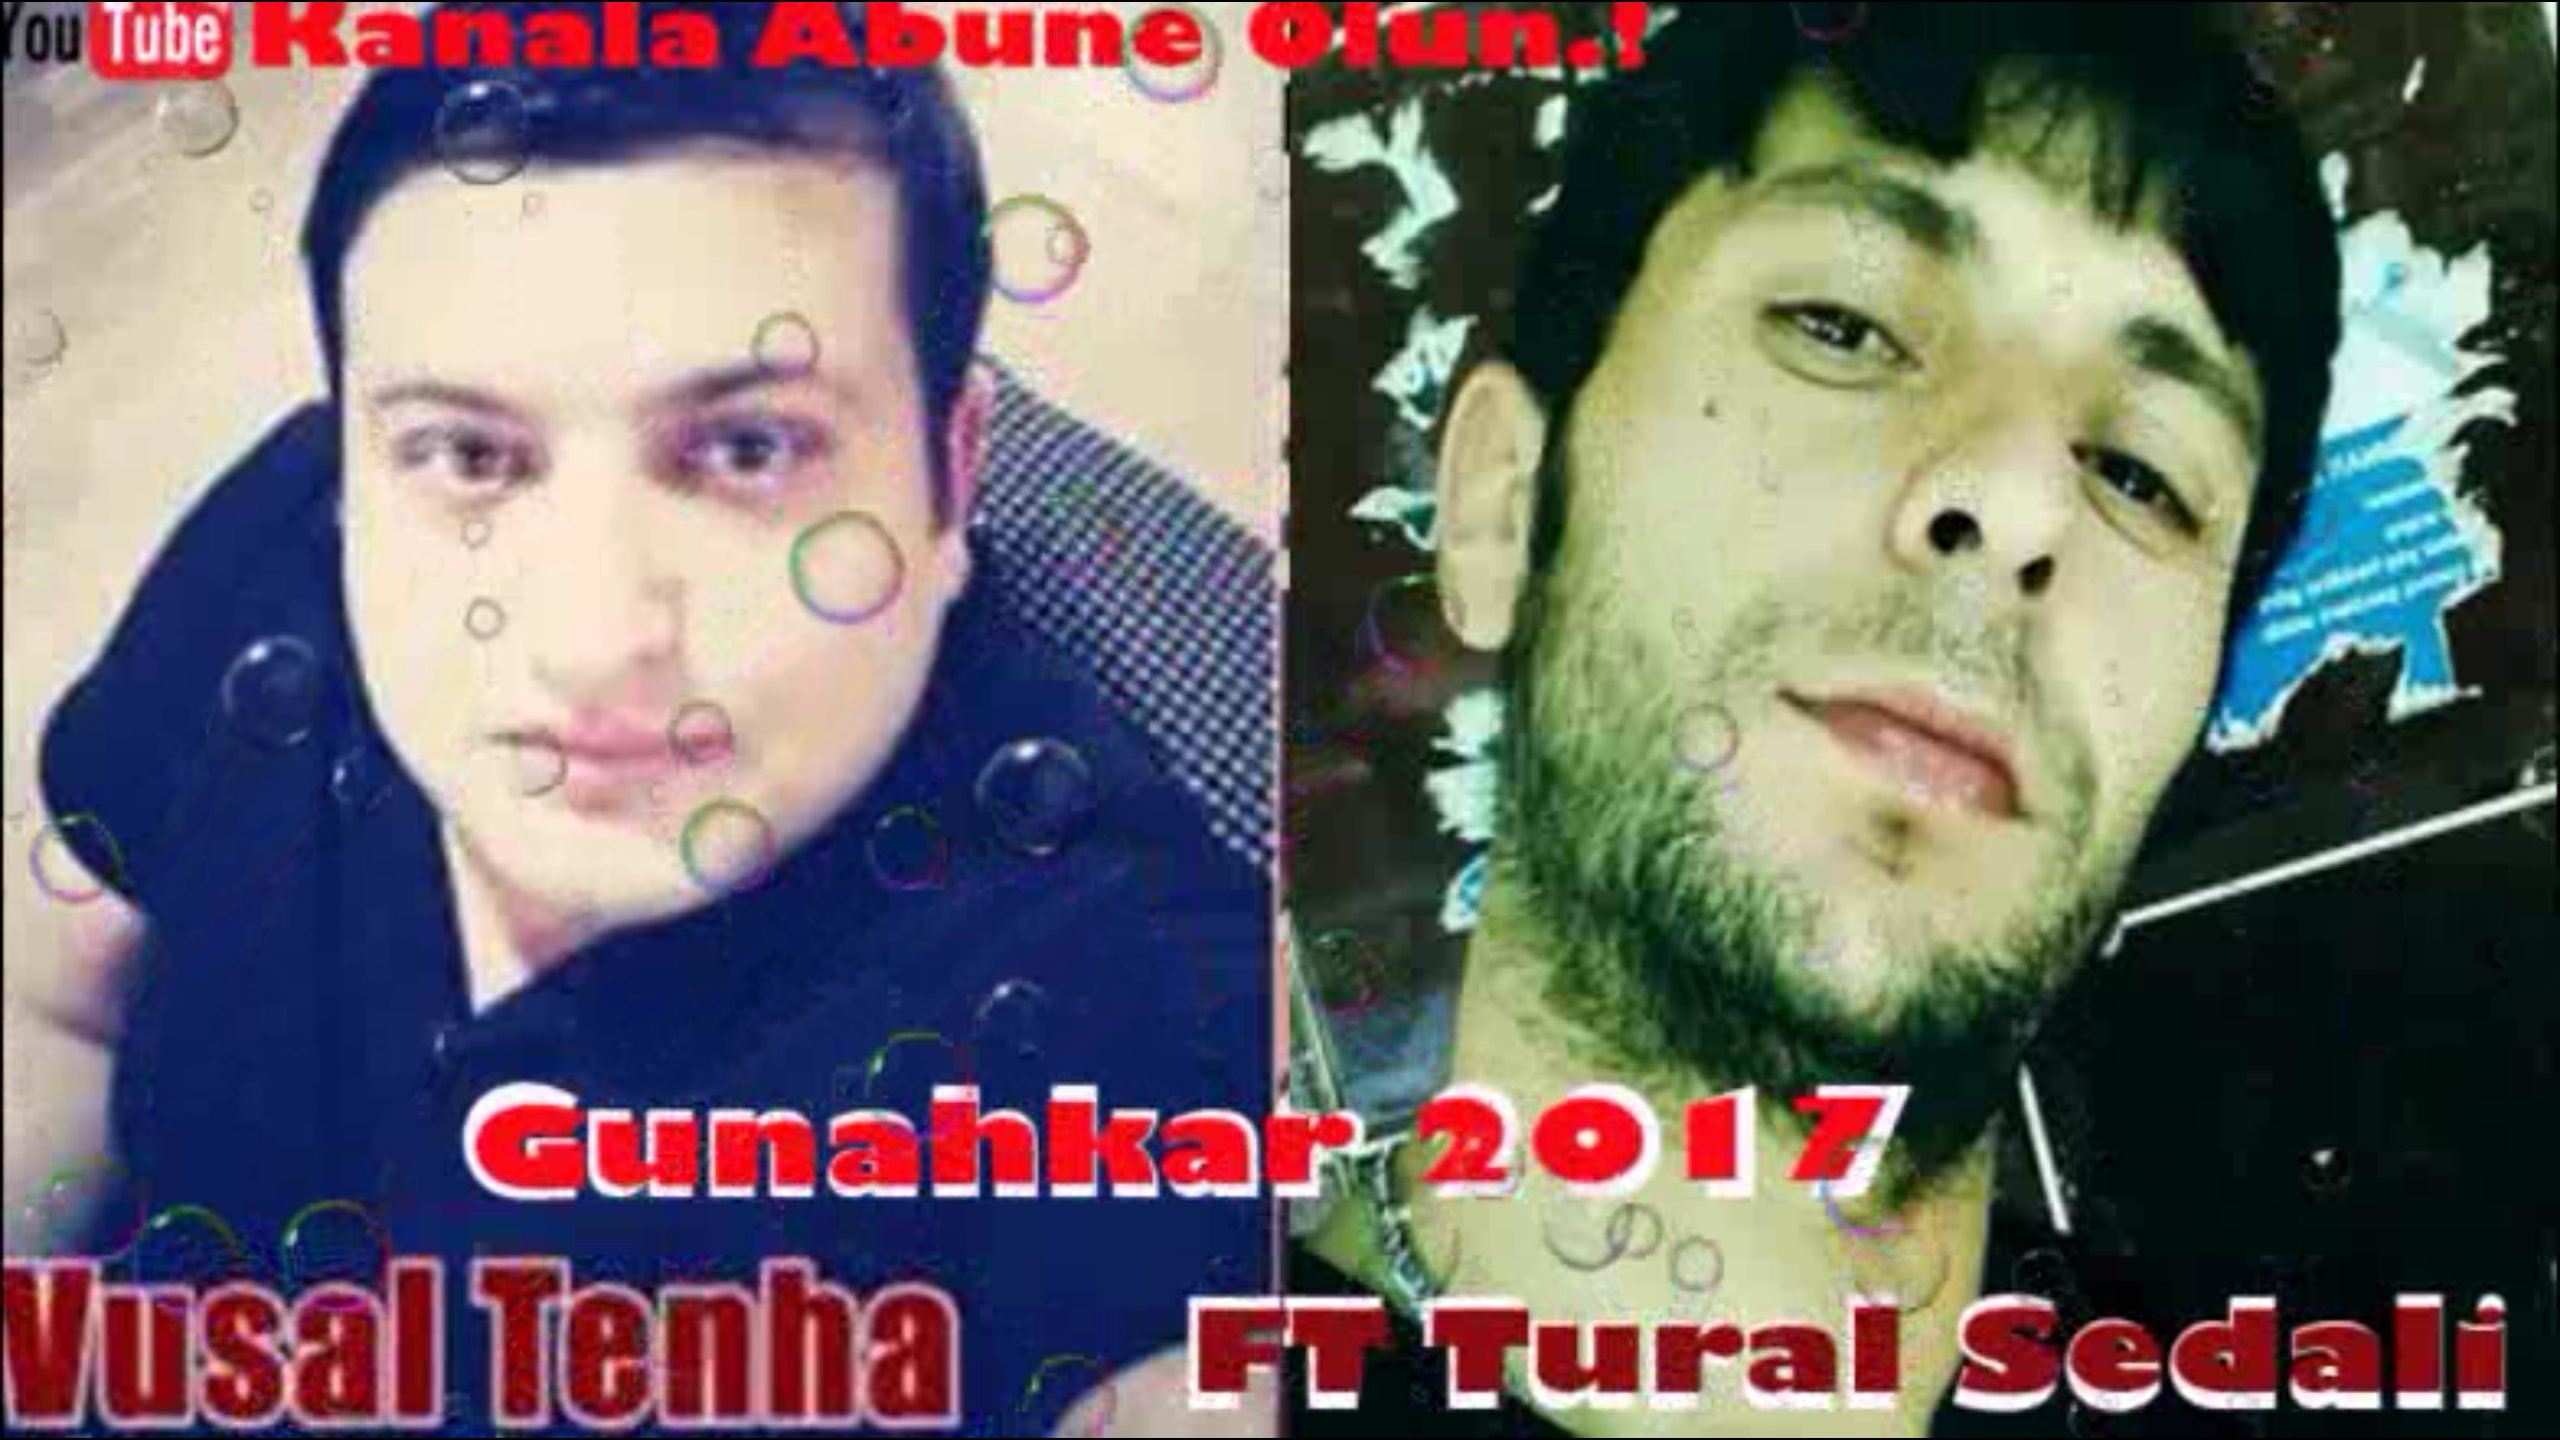 Vusal Tenha ft Tural Sedali - Gunahkar 2017